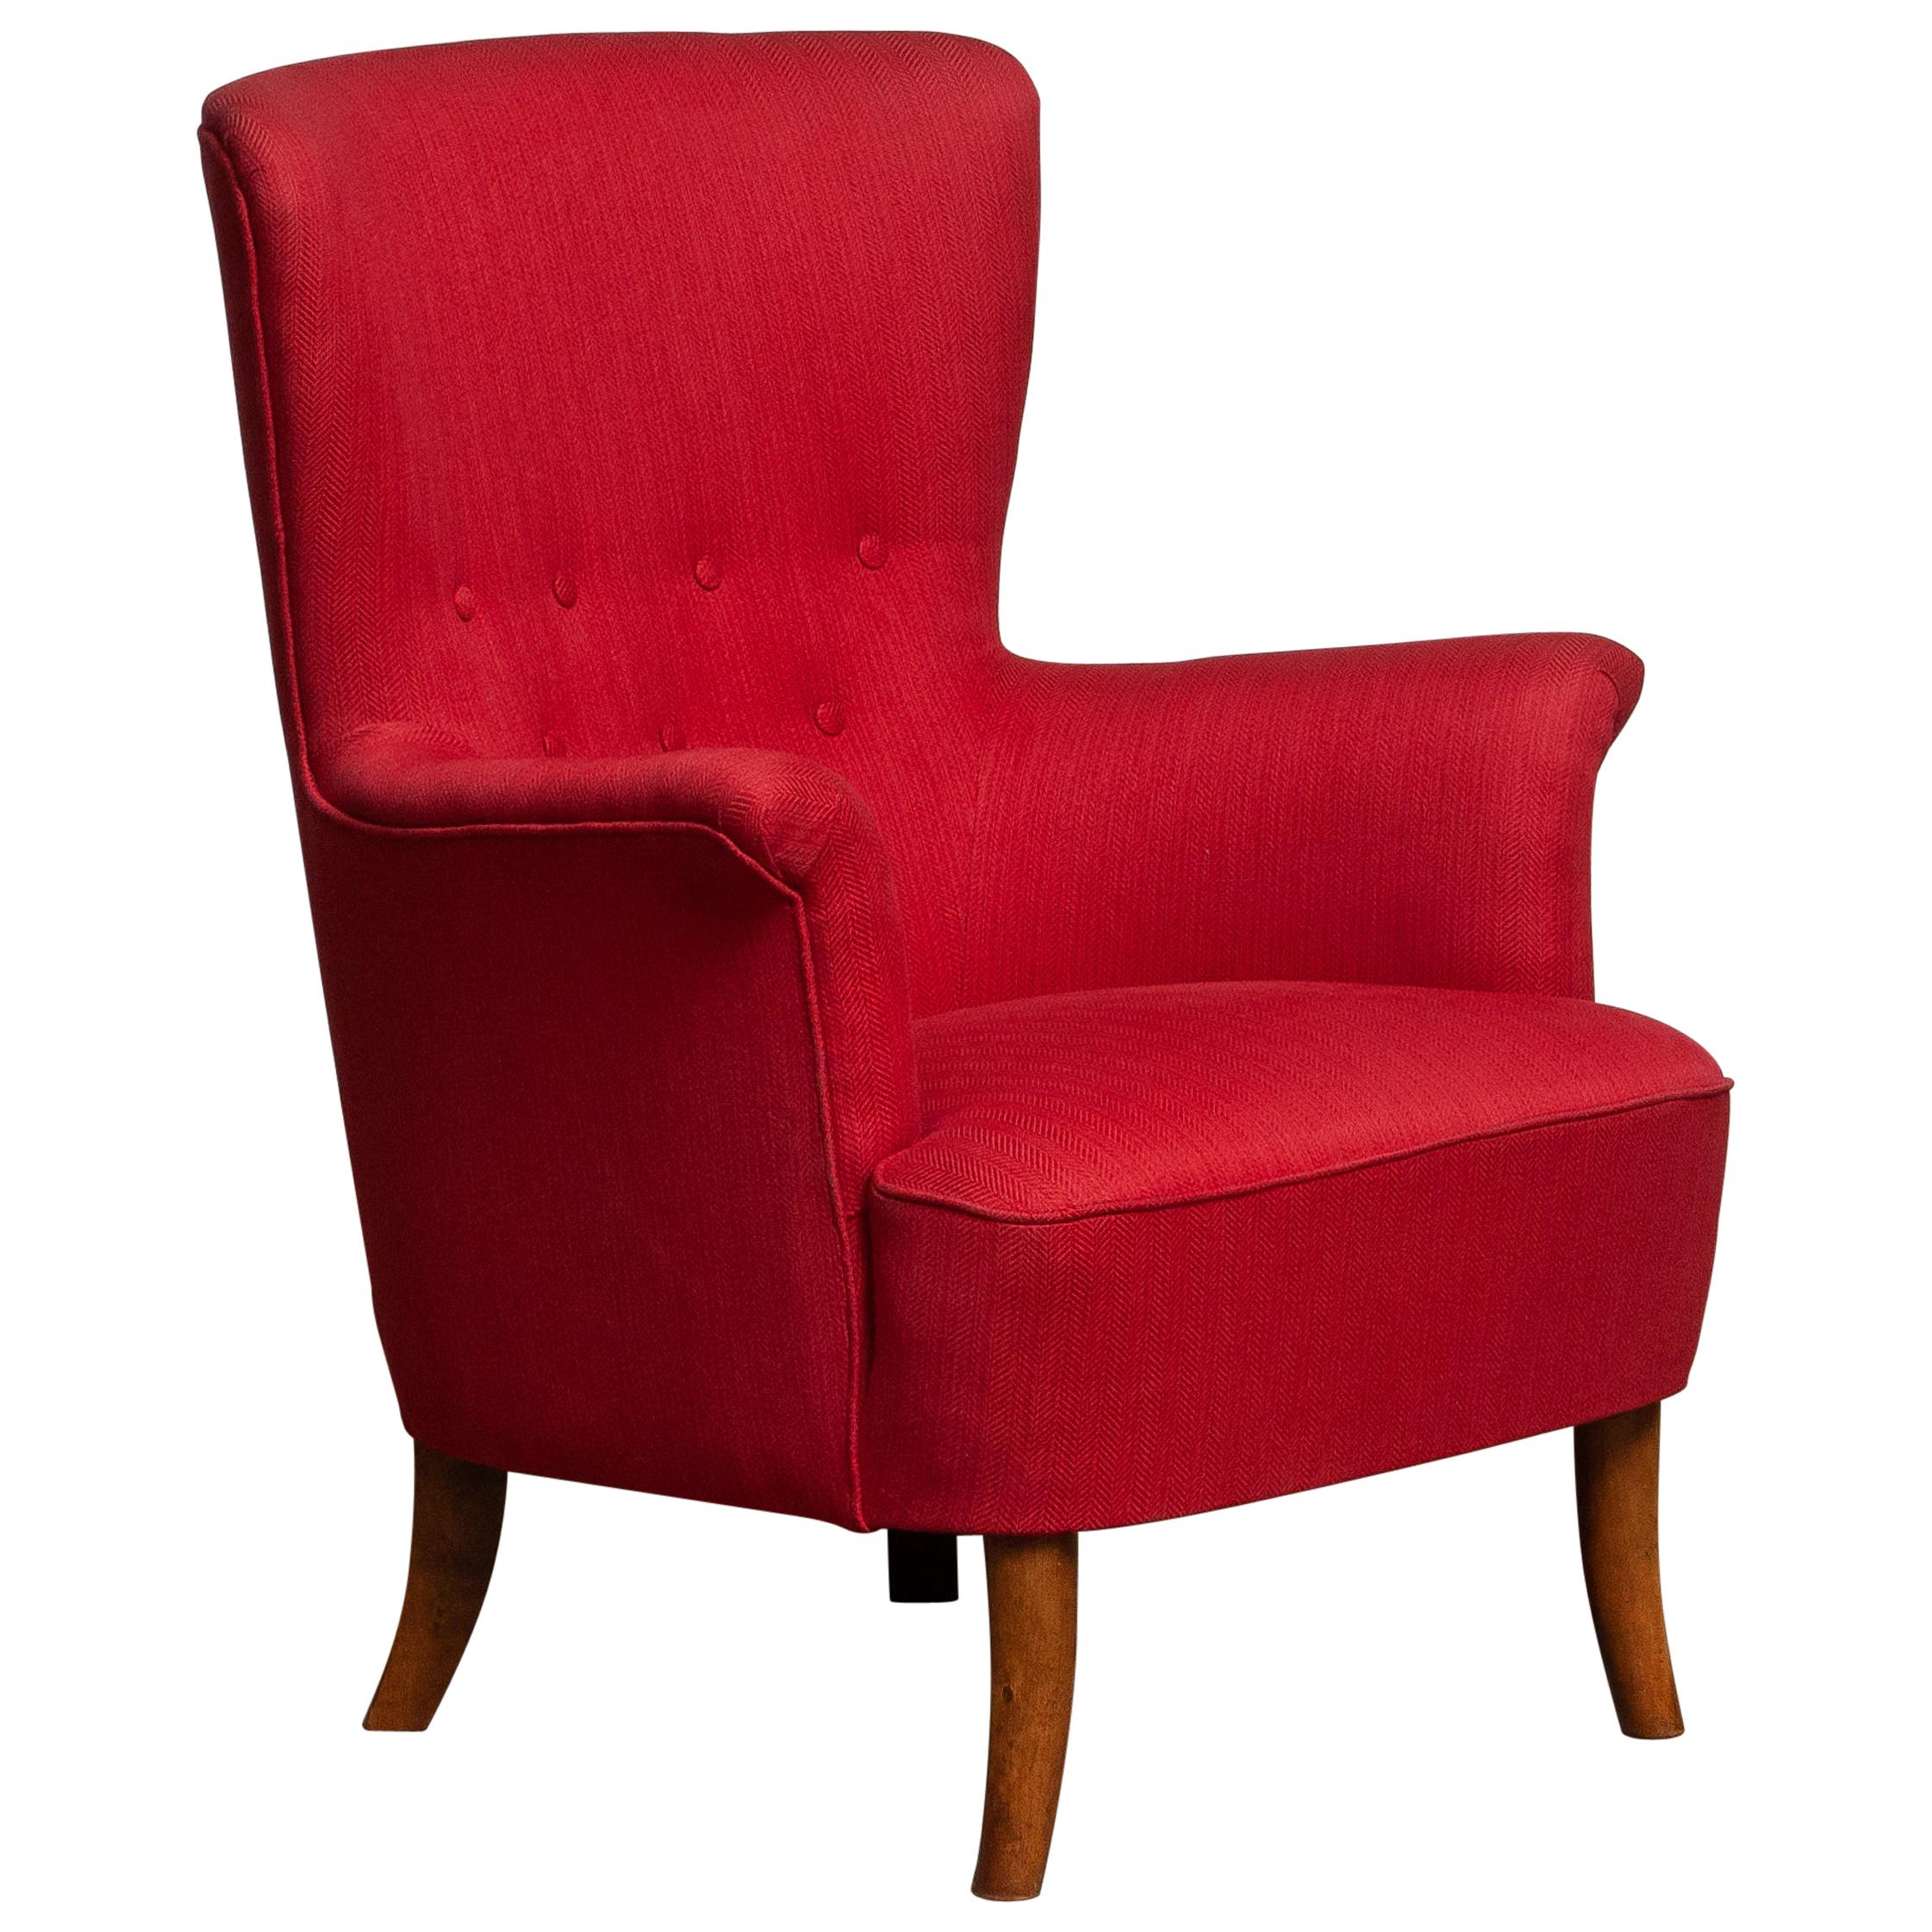 Mid-Century Modern 1940s, Fuchsia Easy or Lounge Chair by Carl Malmsten for Oh Sjogren, Sweden